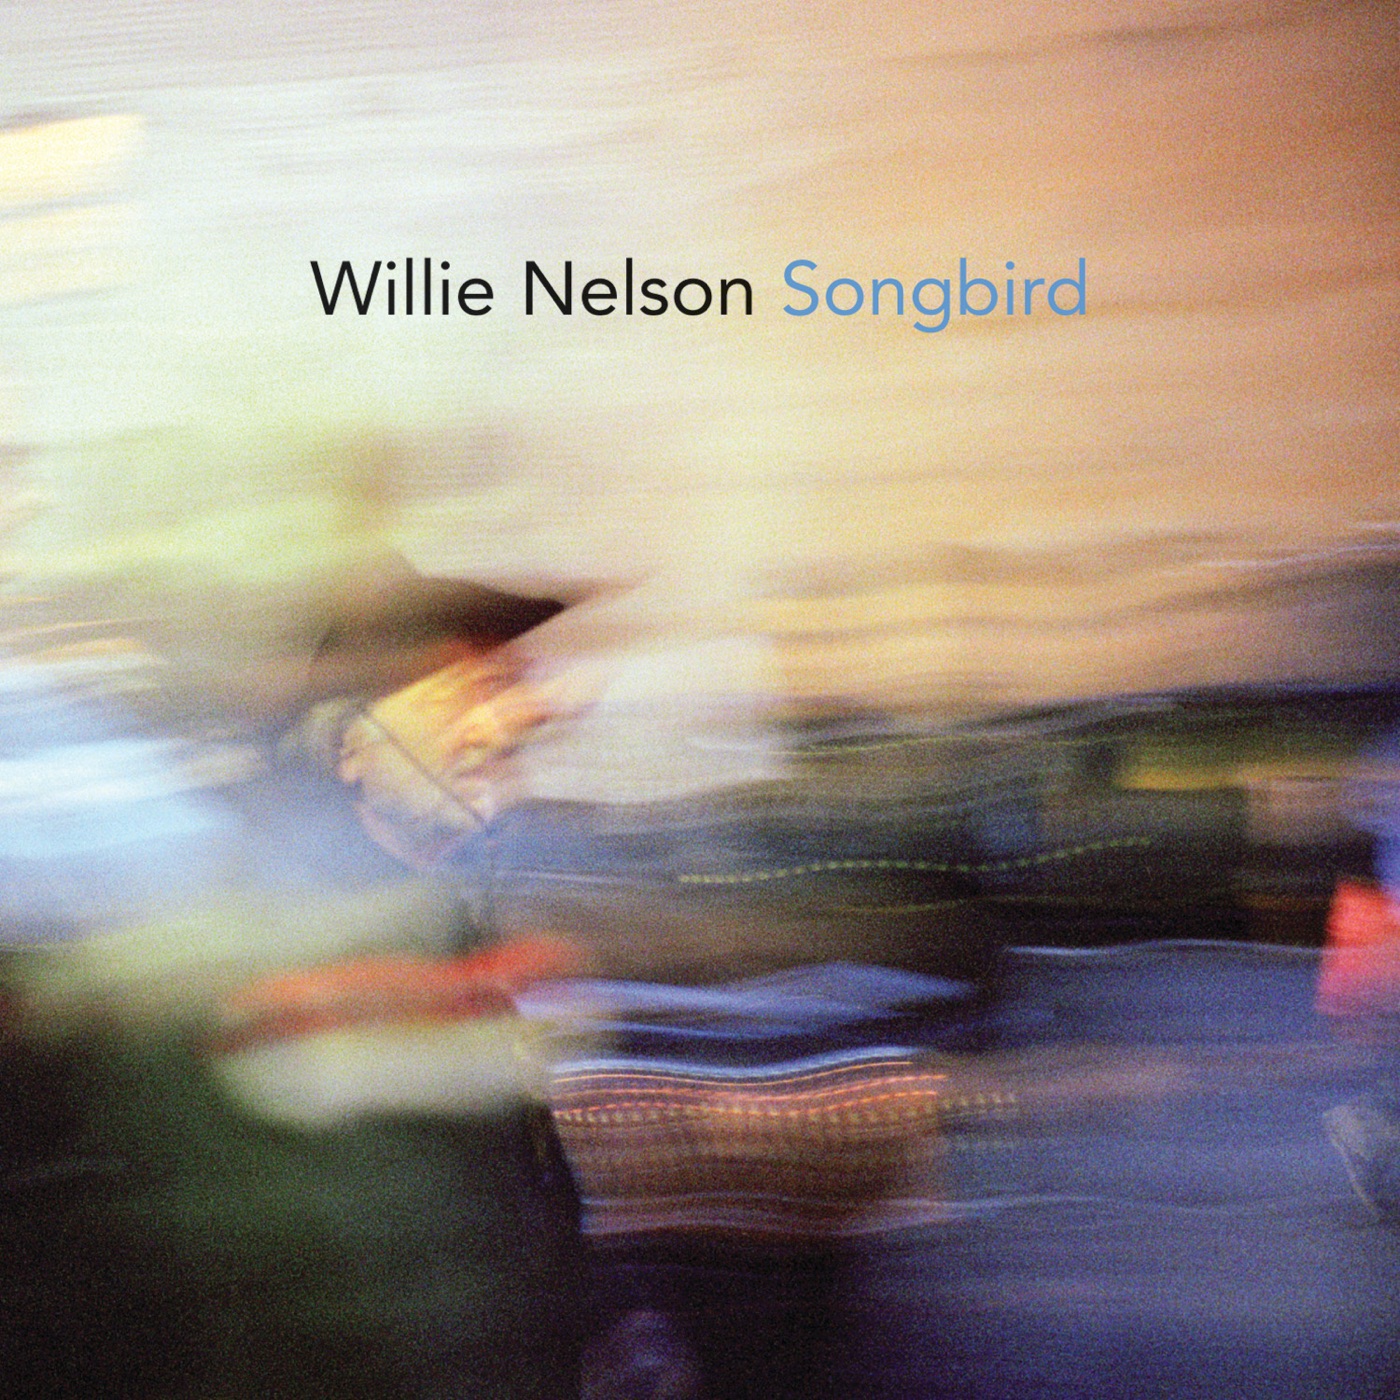 Songbird by Willie Nelson, Songbird